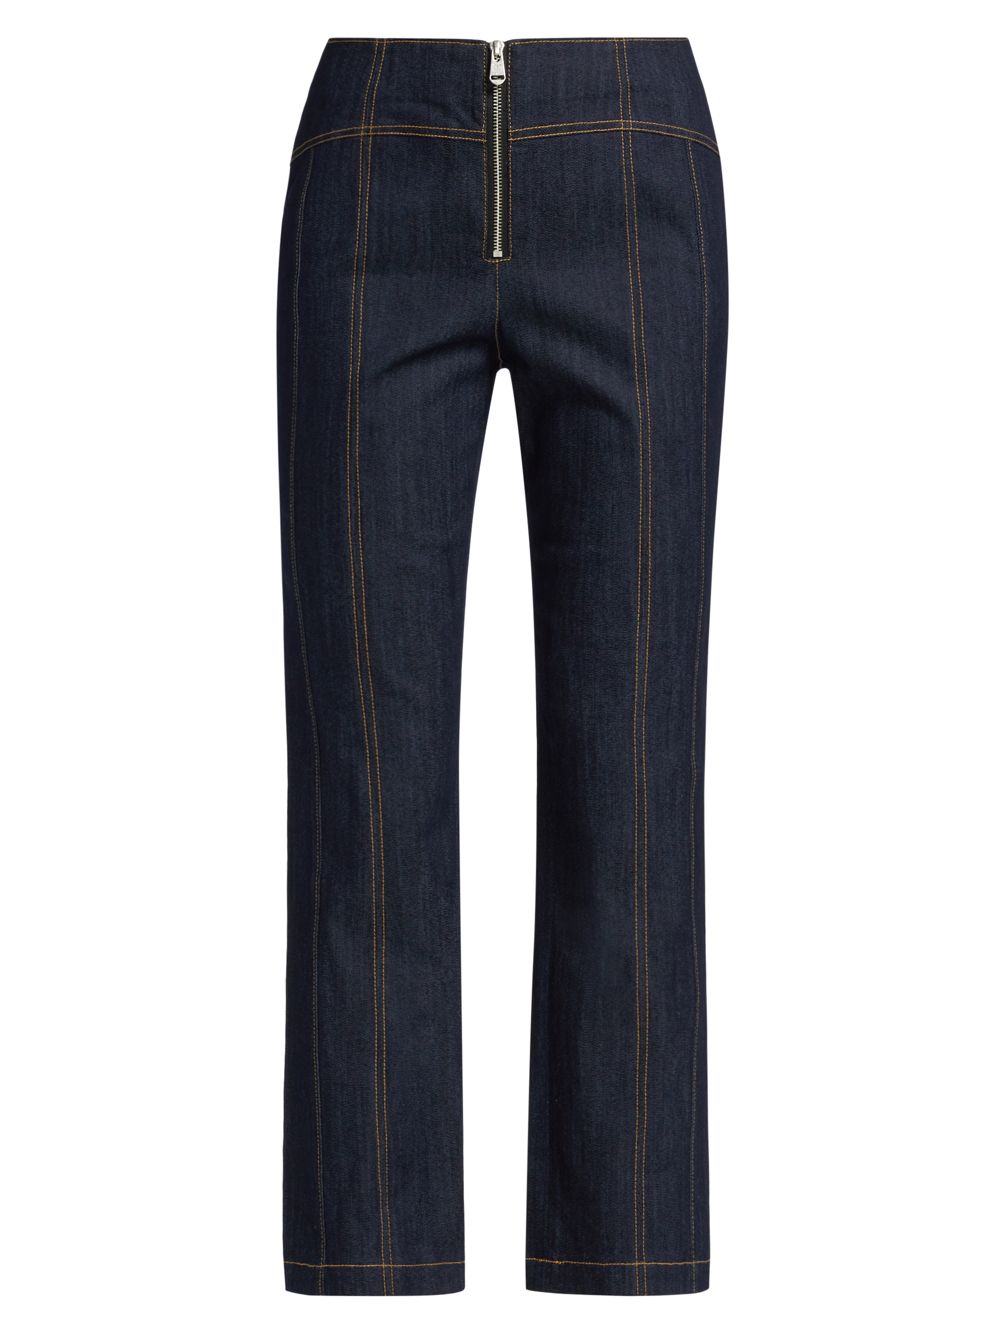 Эластичные прямые укороченные джинсы Loren с высокой посадкой Cinq à Sept, индиго